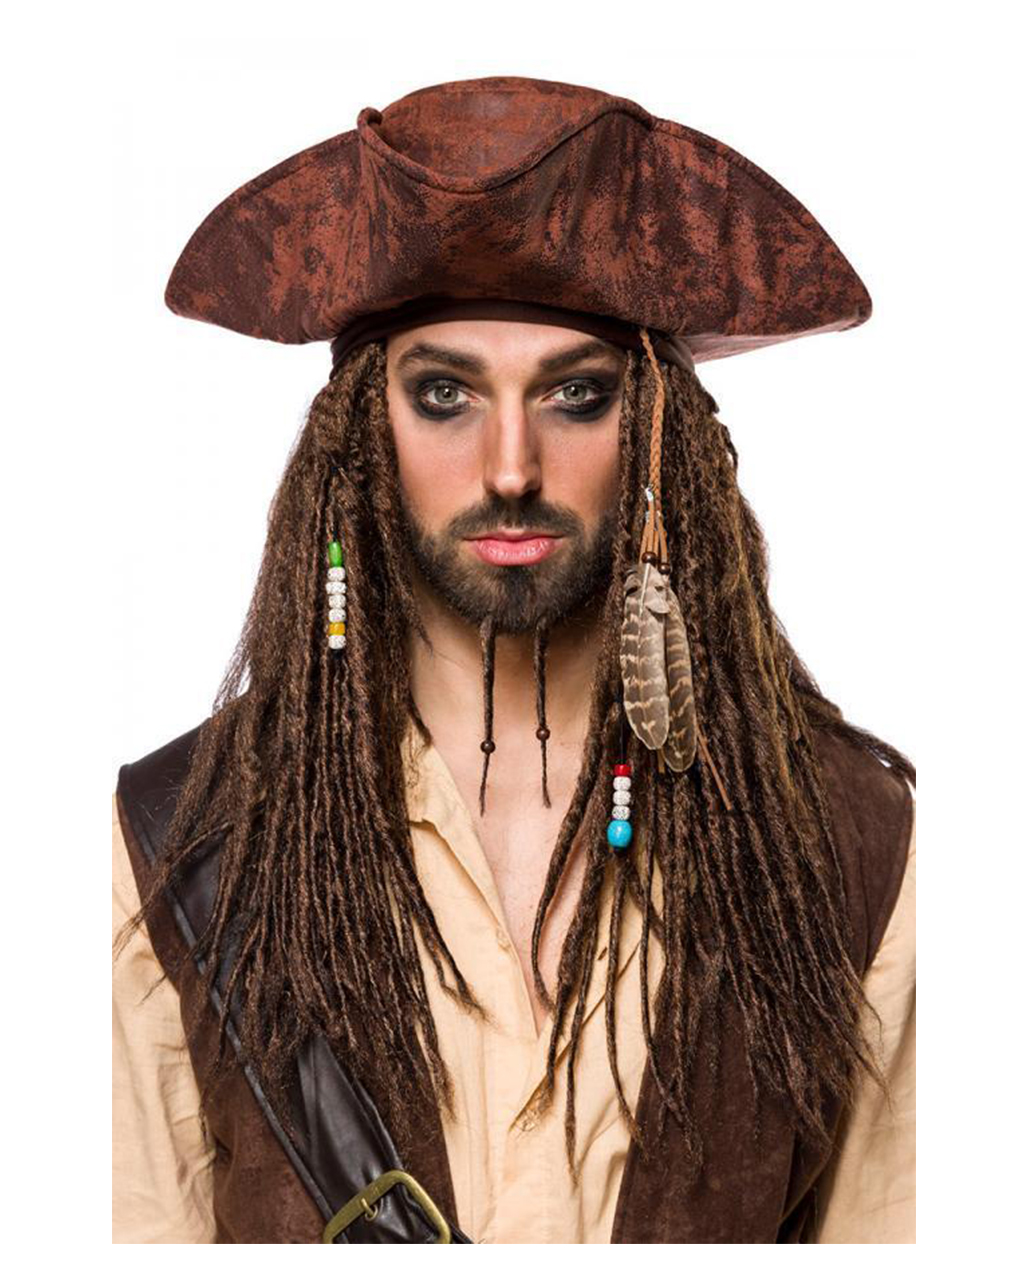 Piraten Kostüm für Herren - Seeräuber Kollektion